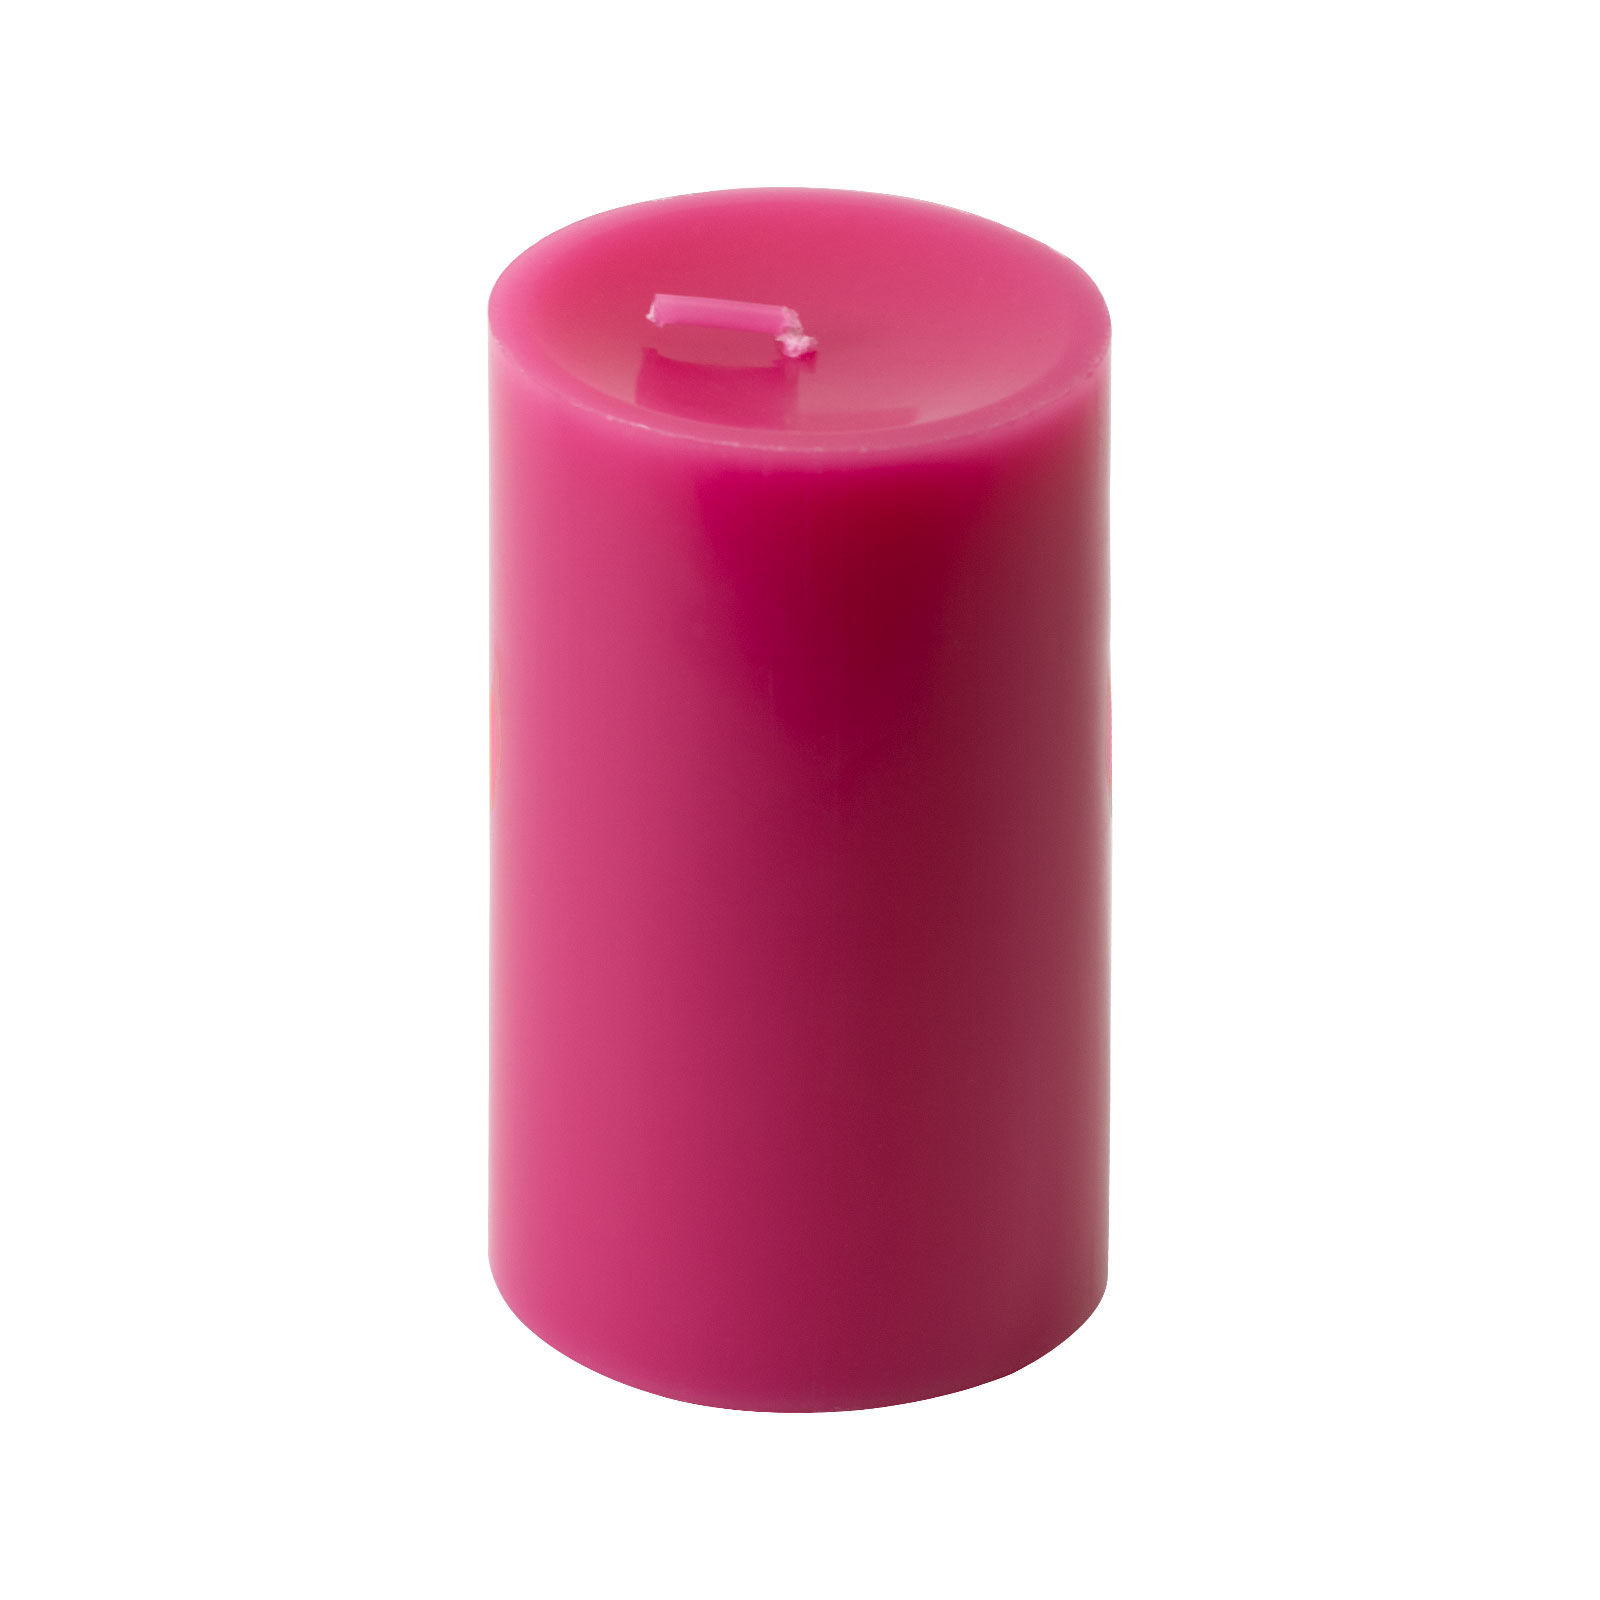 Engels Kerzen Stumpenkerze 8x15cm pink